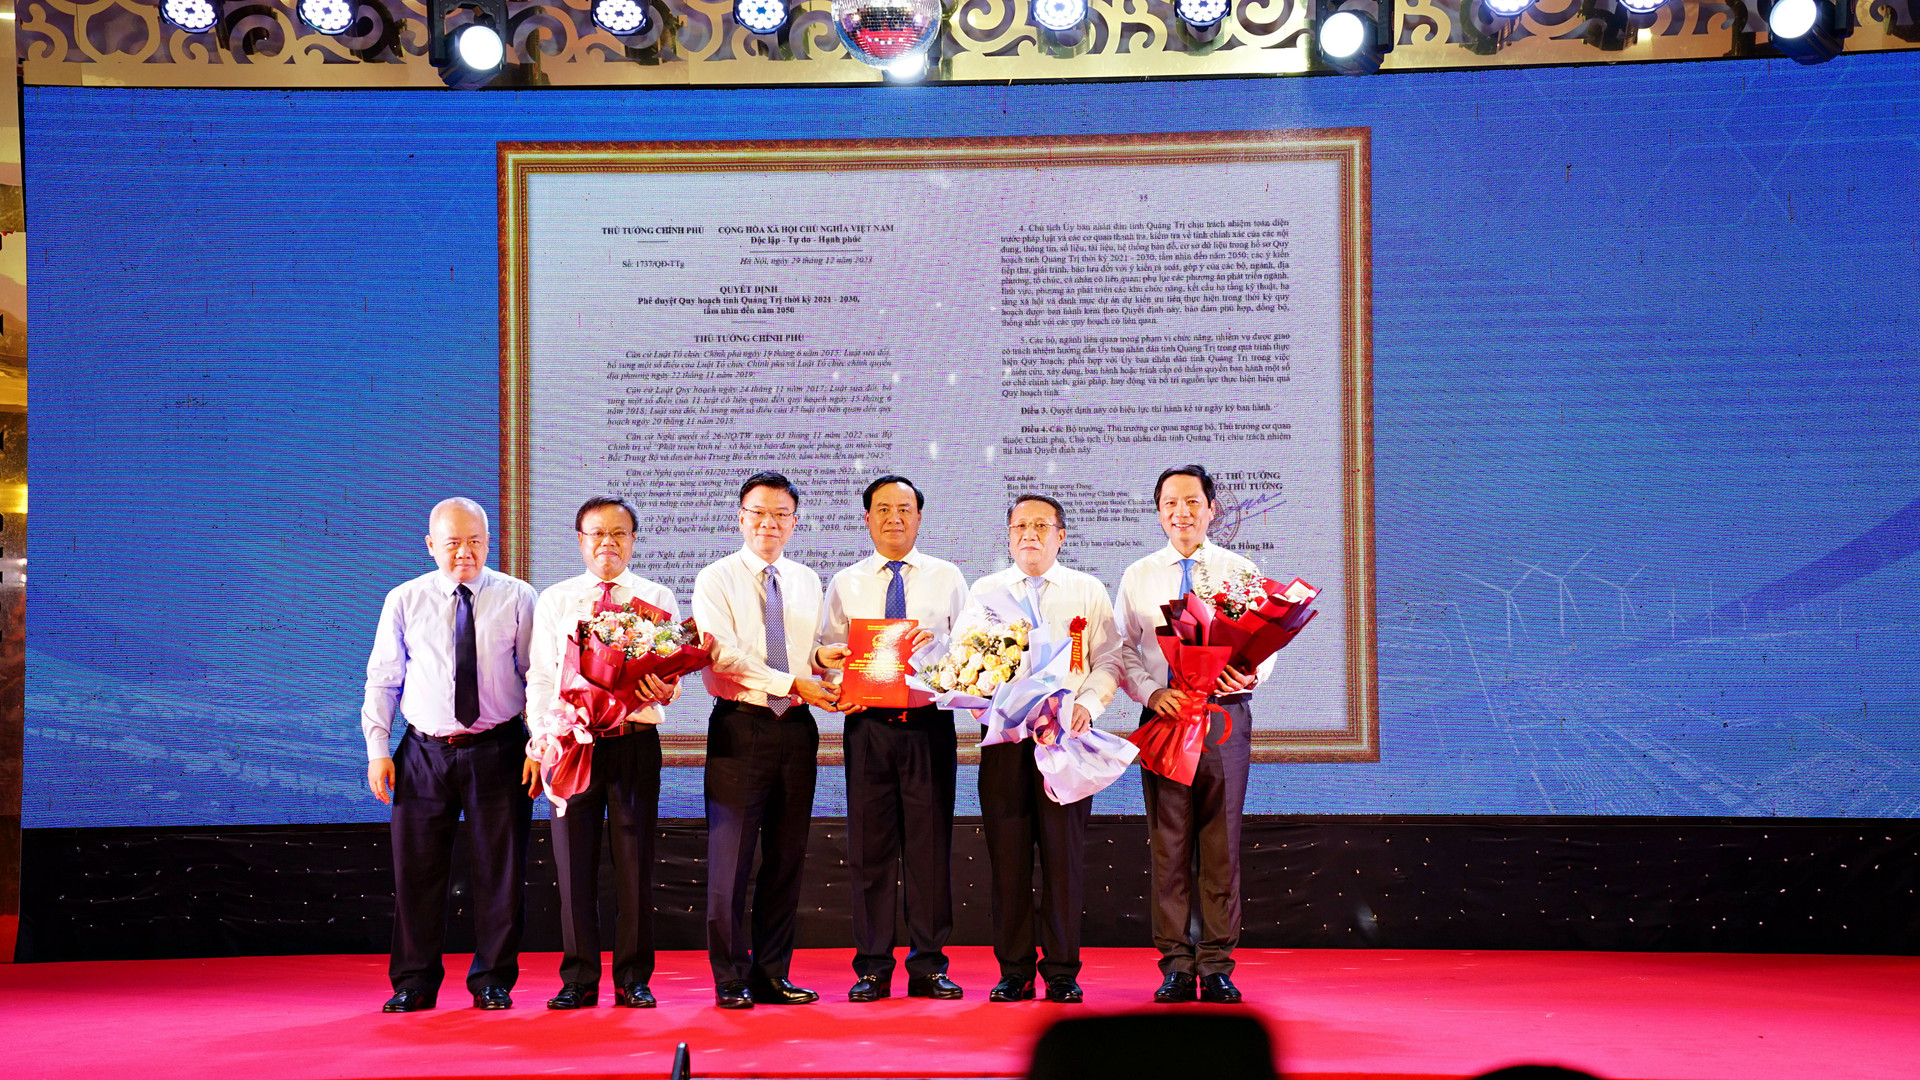 Phó Thủ tướng Chính phủ Lê Thành Long; Thứ trưởng Bộ Kế hoạch và Đầu tư Đỗ Thành Trung trao quyết định của Thủ tướng Chính phủ phê duyệt Quy hoạch tỉnh Quảng Trị thời kỳ 2021 -2030, tầm nhìn đến năm 2050 cho lãnh đạo tỉnh Quảng Trị.